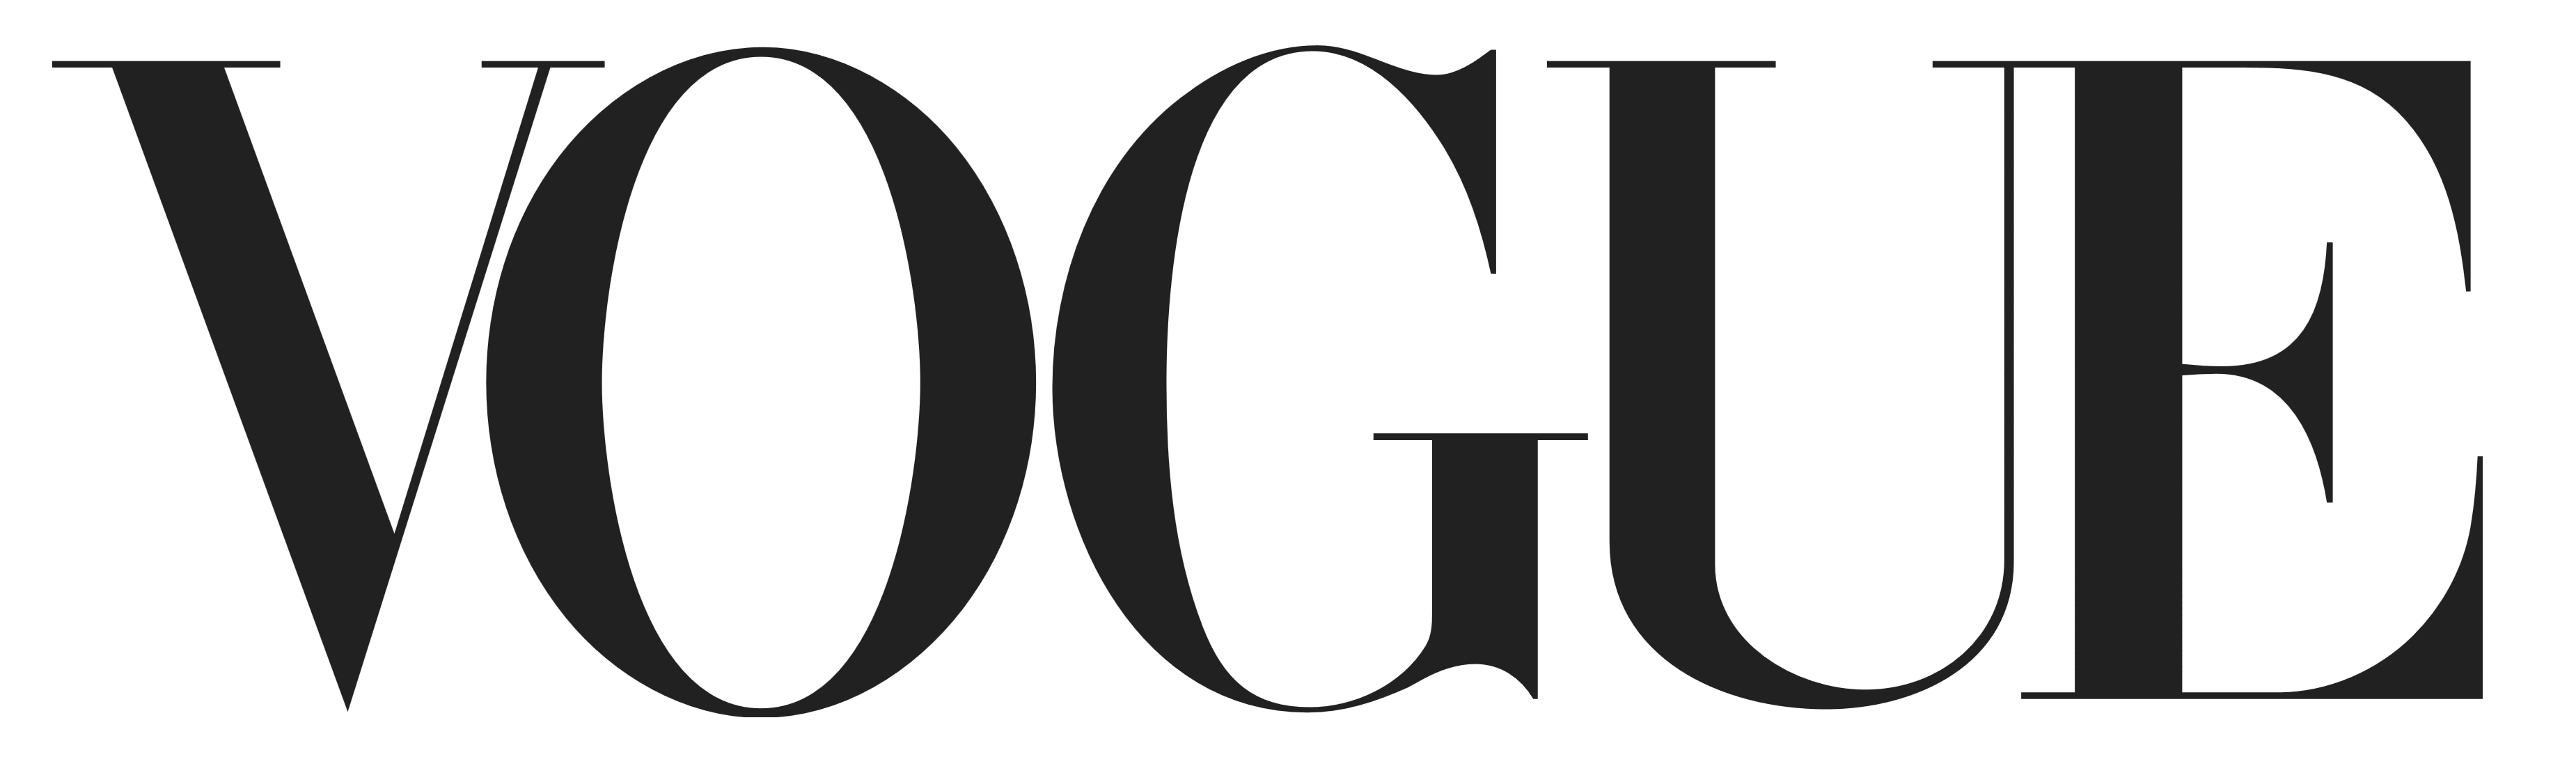 Vogue logo, logotype